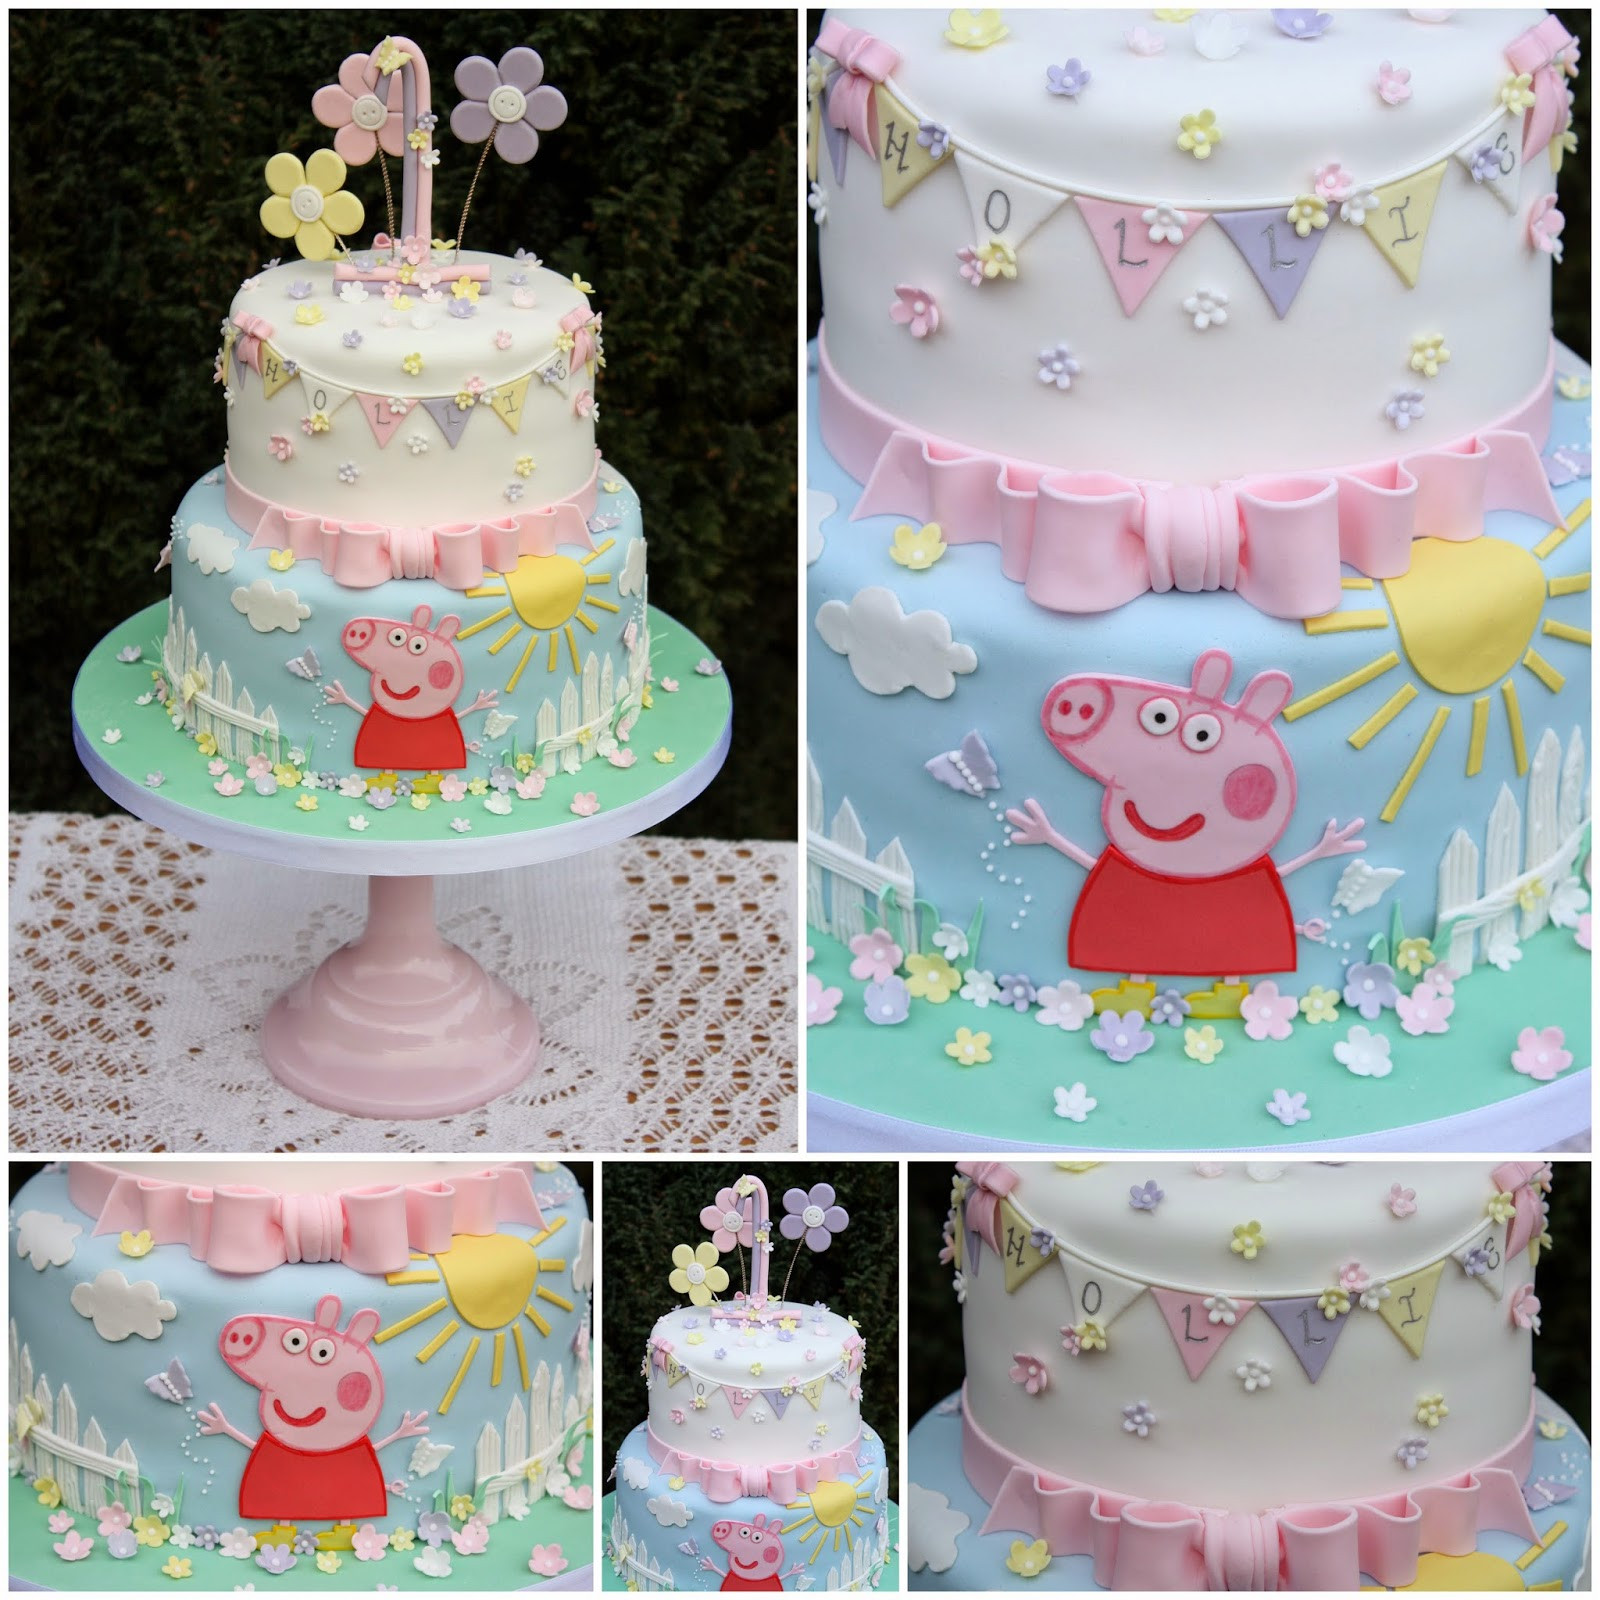 Peppa Pig Birthday Cakes
 Tiers & Tiaras Hollie s Peppa Pig 1st Birthday Cake